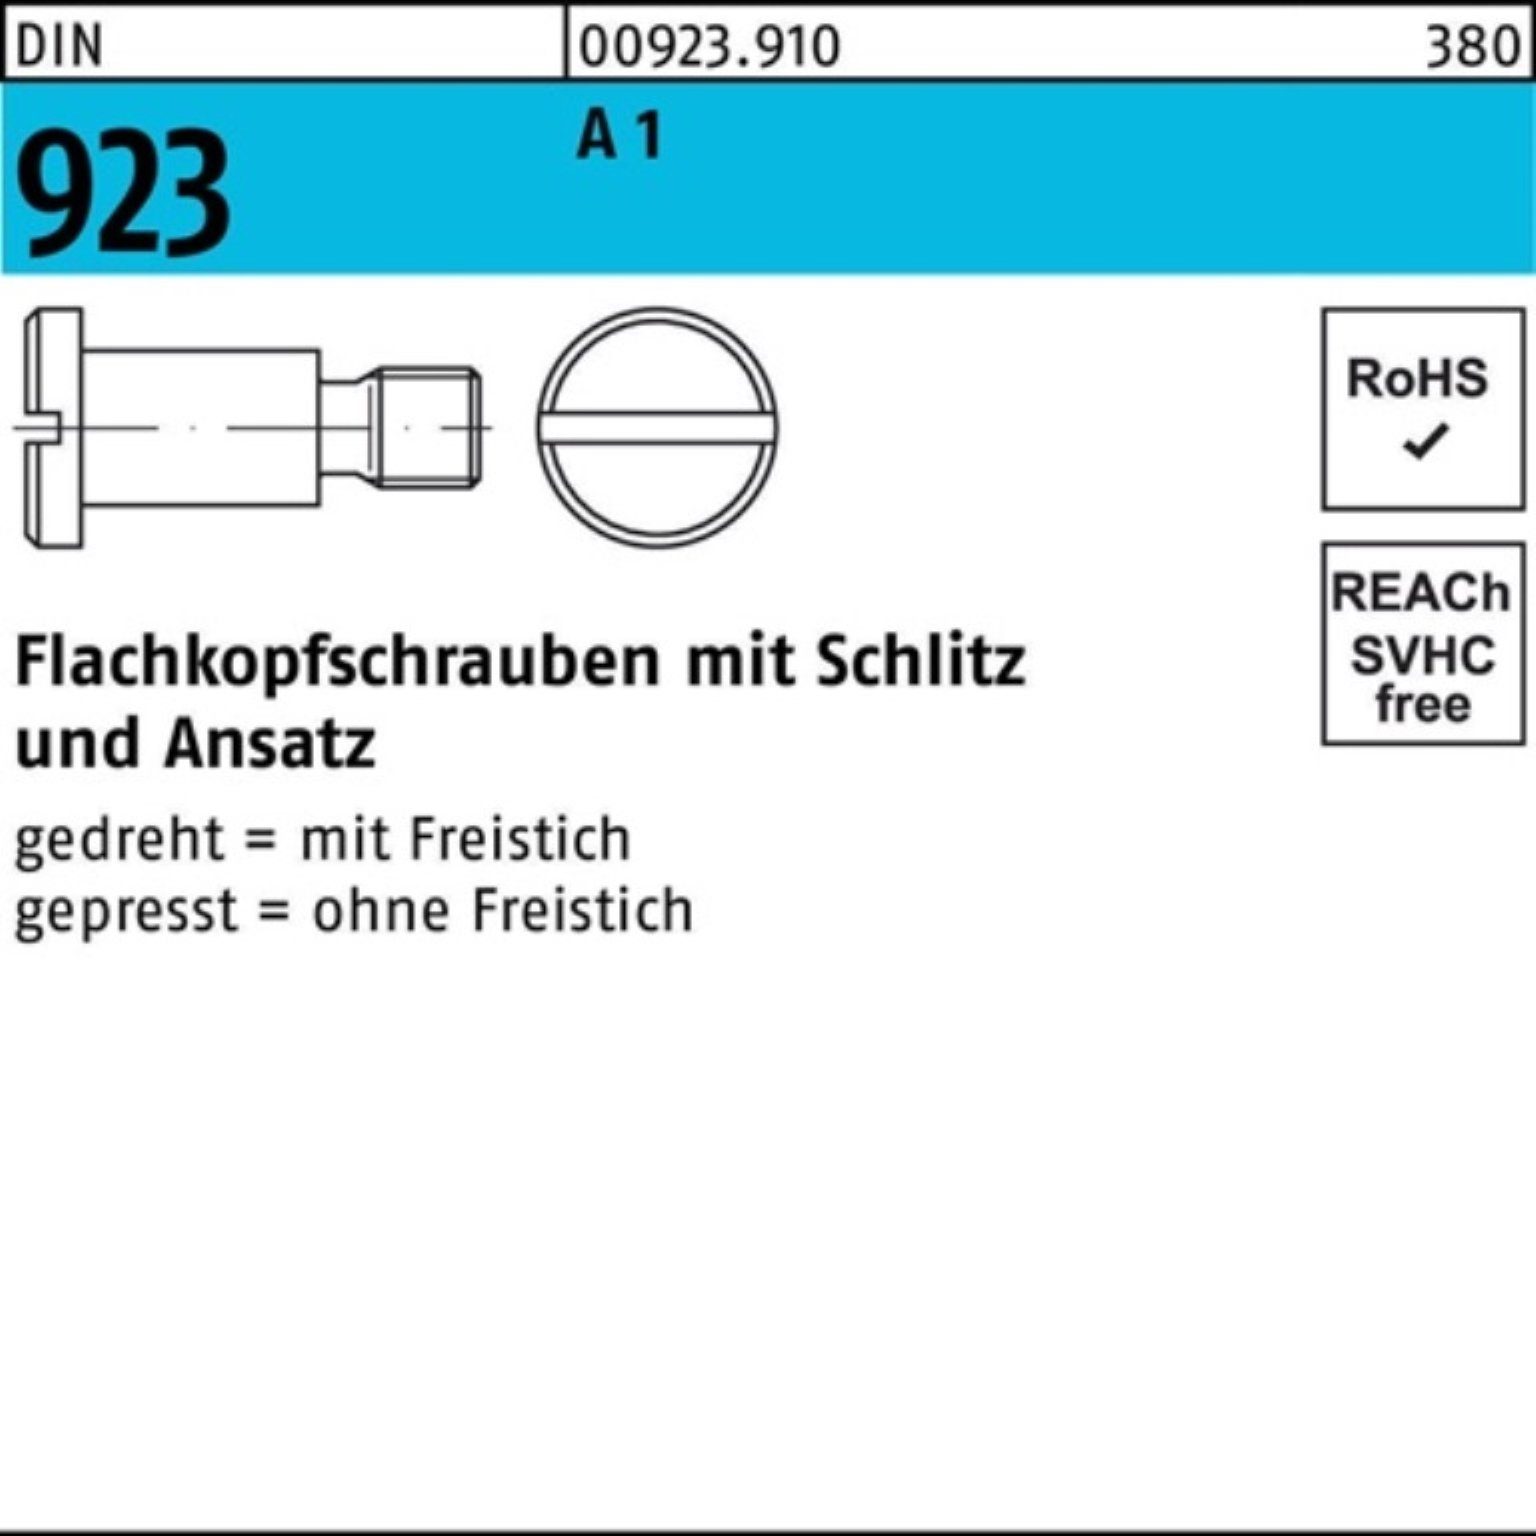 M4x 2x Reyher 1 Flachkopfschraube Schraube A Schlitz/Ansatz 923 DIN 100er 100 Pack 6,0